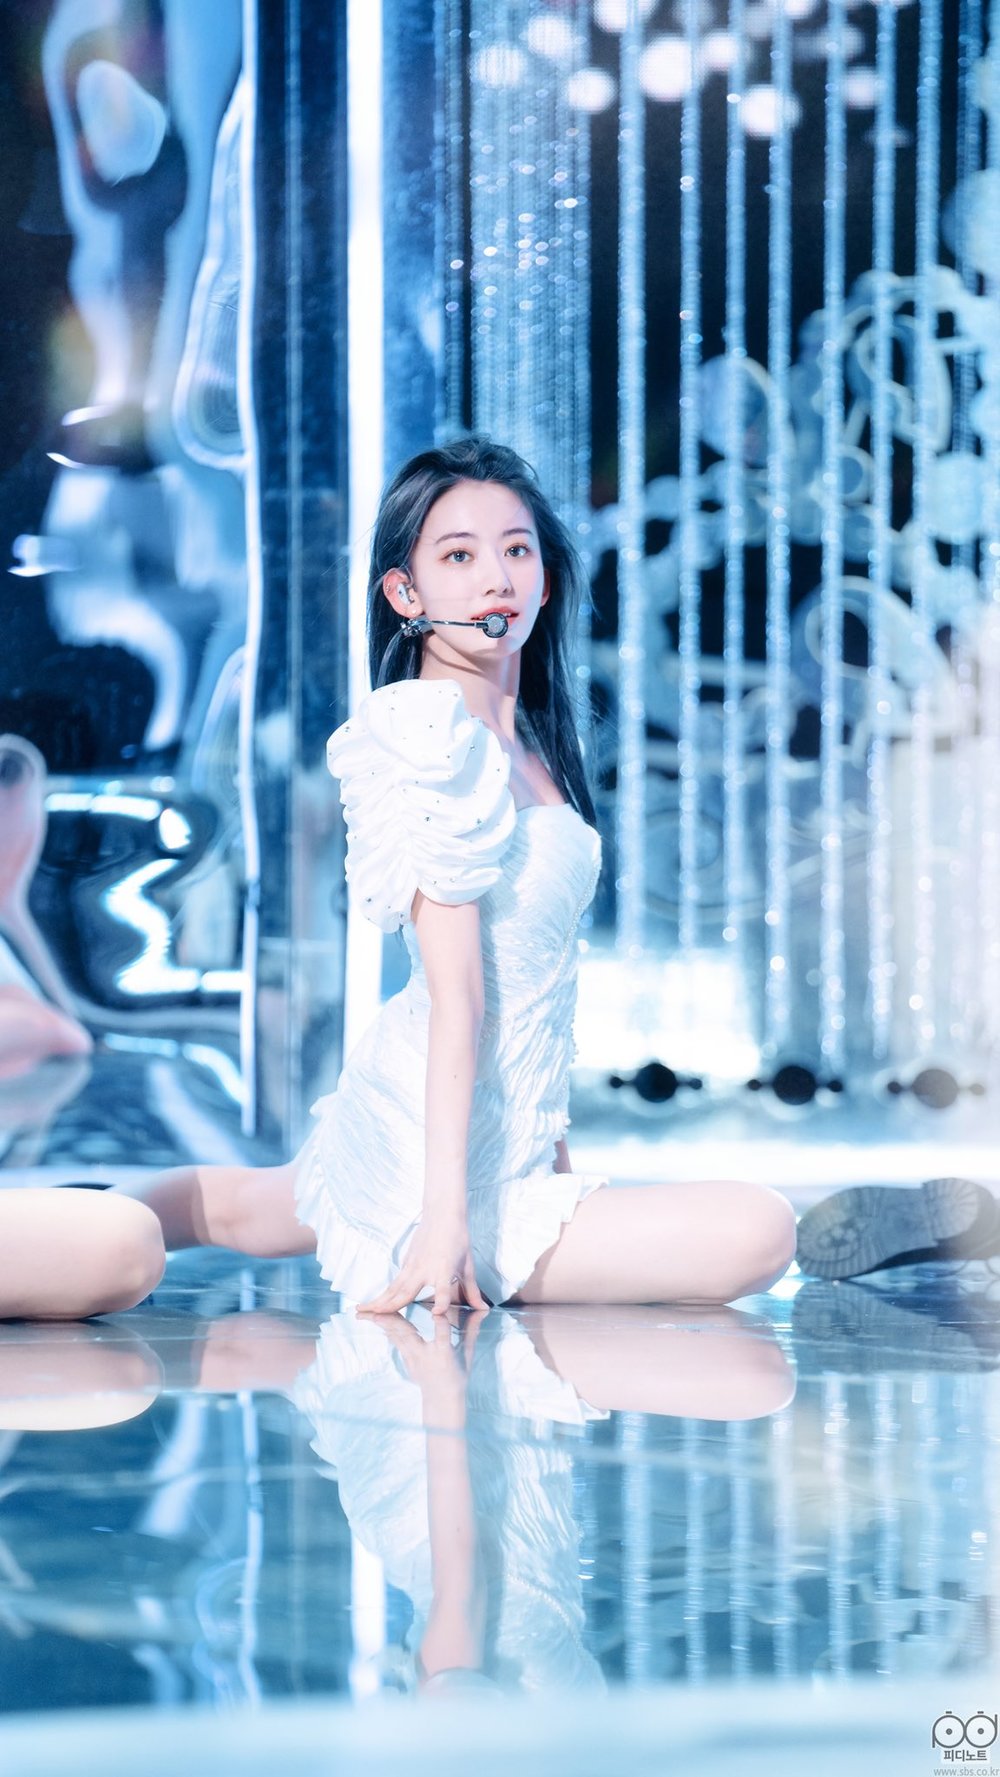  Sakura tỏa sáng trên sân khấu với nhan sắc xinh đẹp. (Ảnh: SBS)